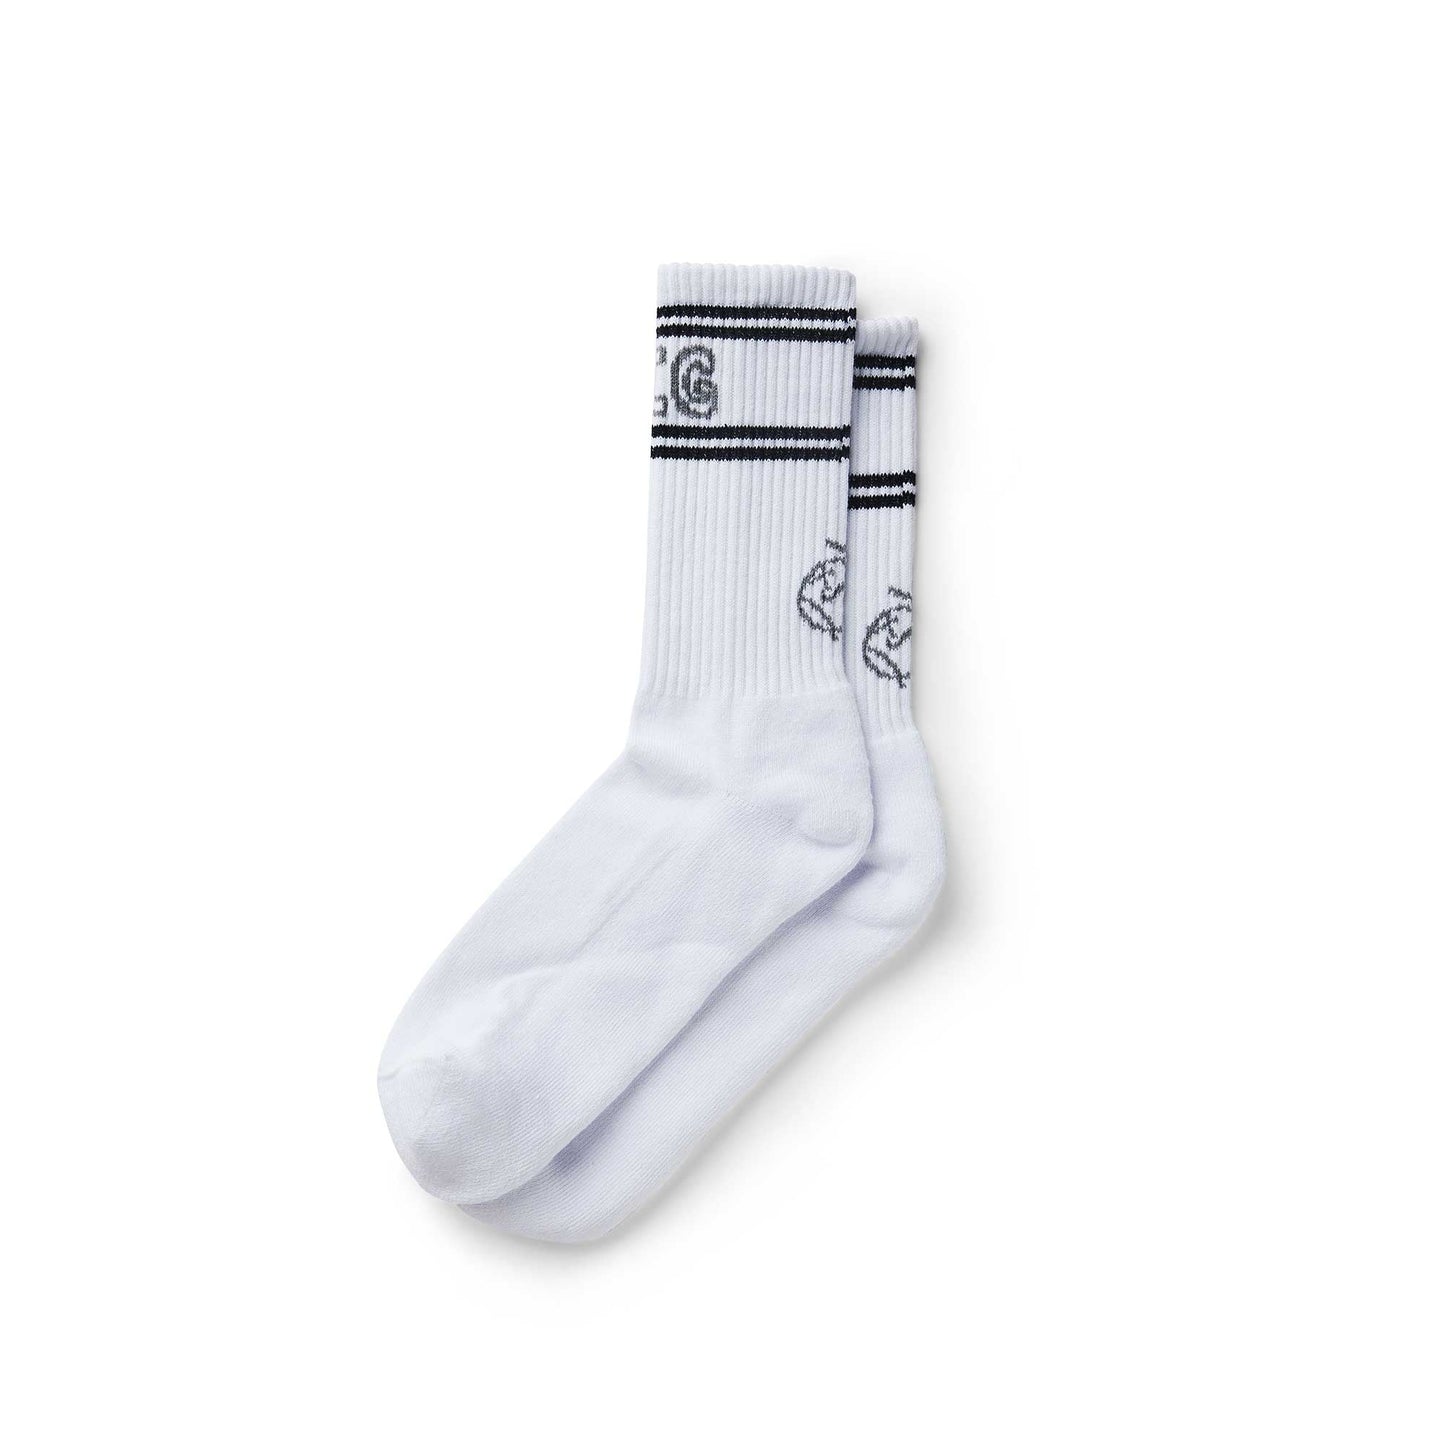 Polar Big Boy Socks, white/black/grey - Tiki Room Skateboards - 1